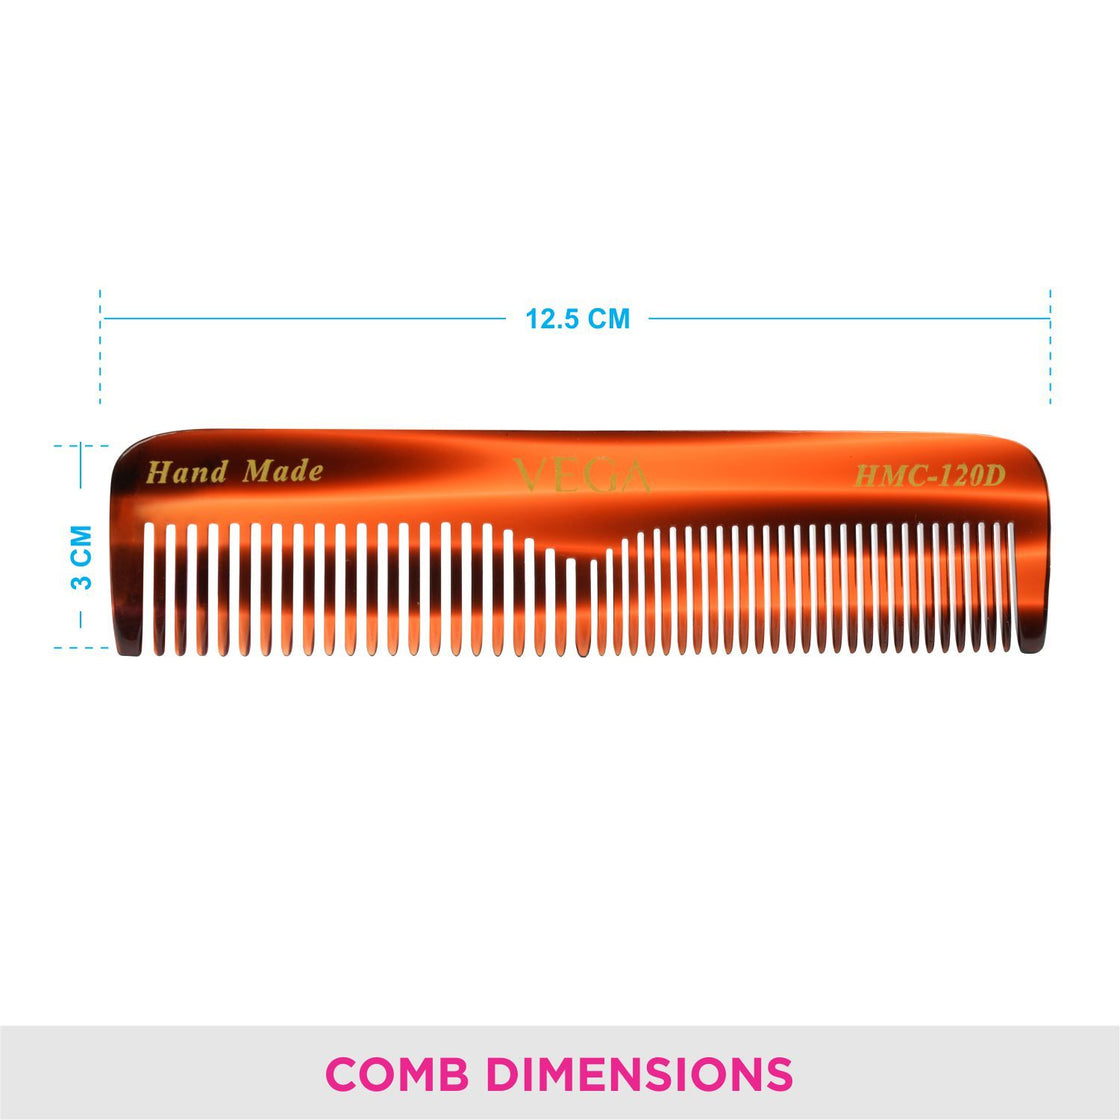 Vega Premium Handcrafted Comb (Hmc-120D)-5